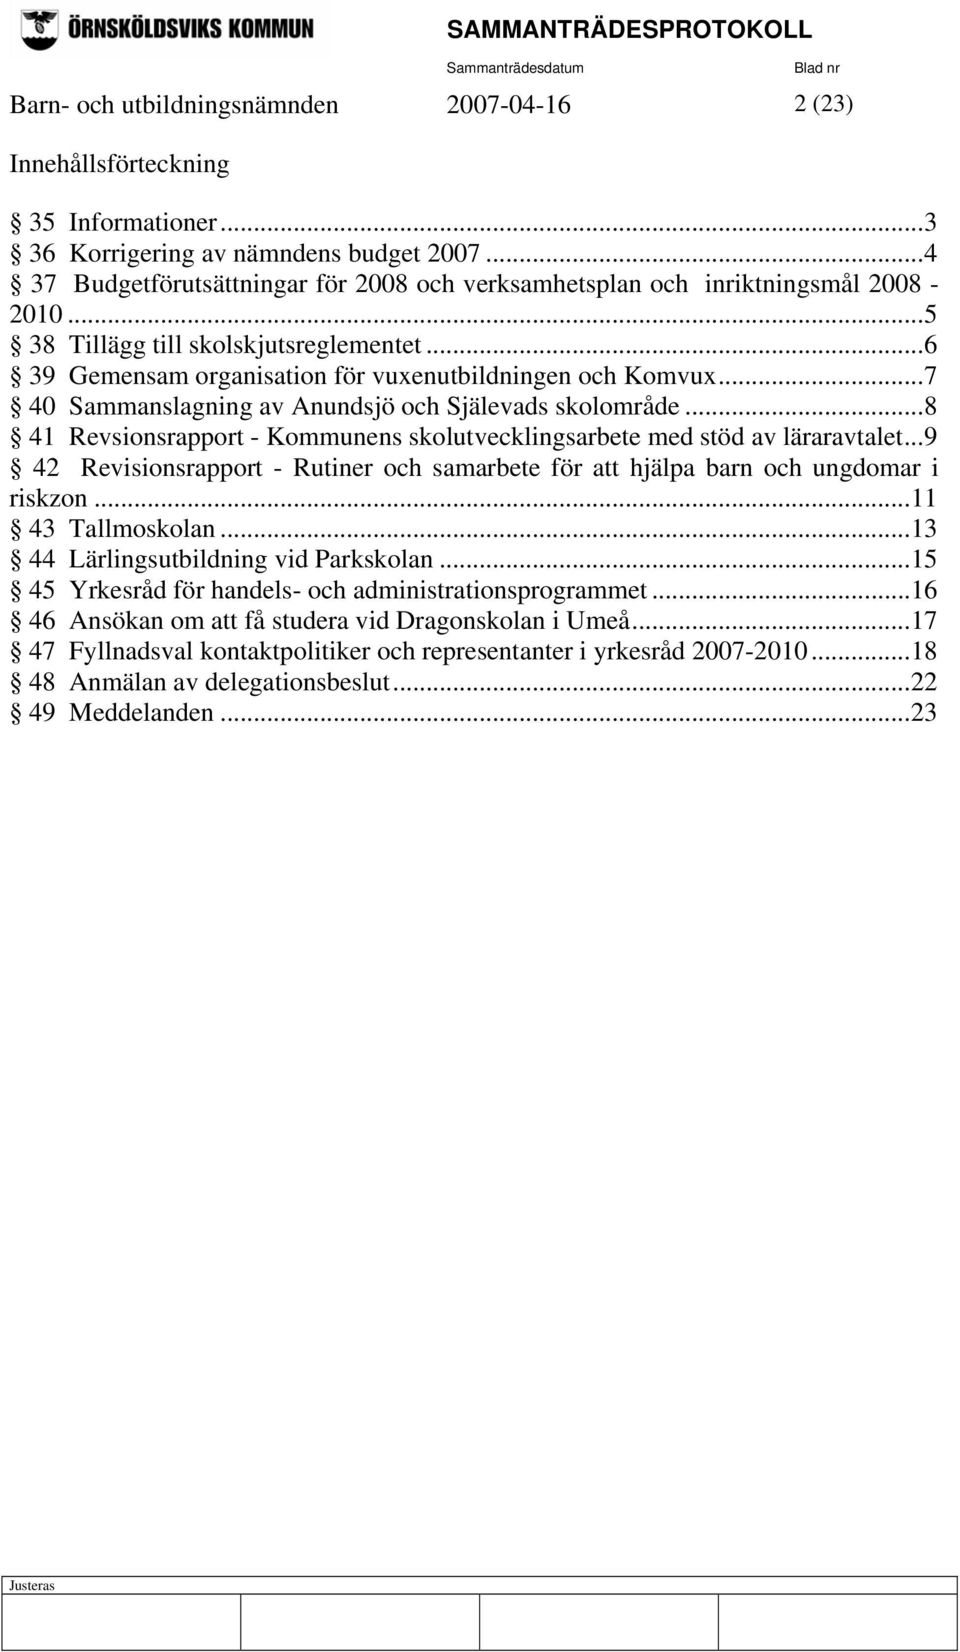 ..7 40 Sammanslagning av Anundsjö och Själevads skolområde...8 41 Revsionsrapport - Kommunens skolutvecklingsarbete med stöd av läraravtalet.